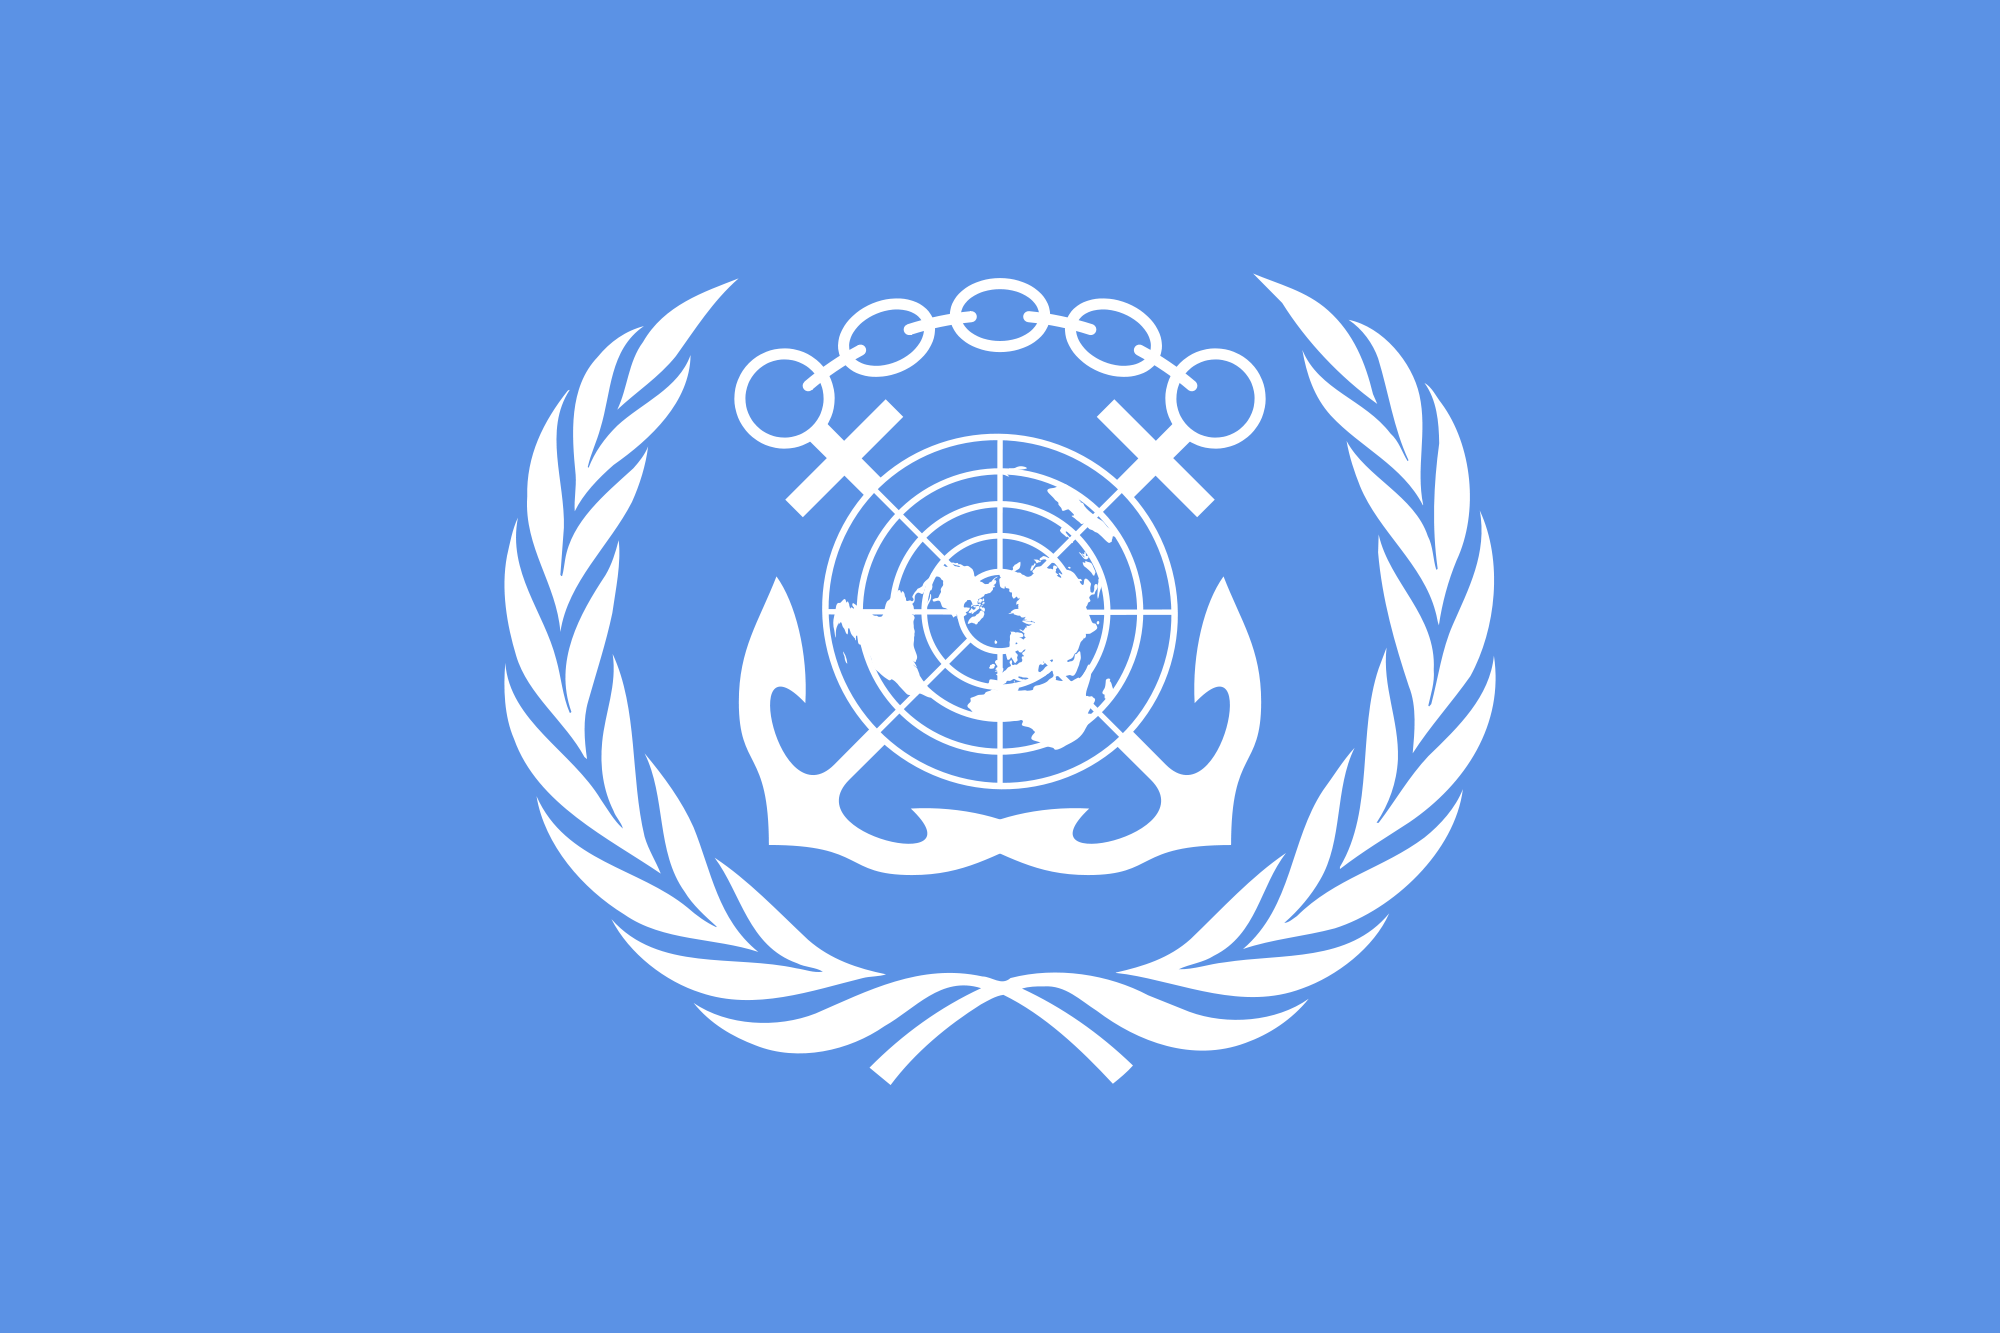 International Maritime Organization (IMO)